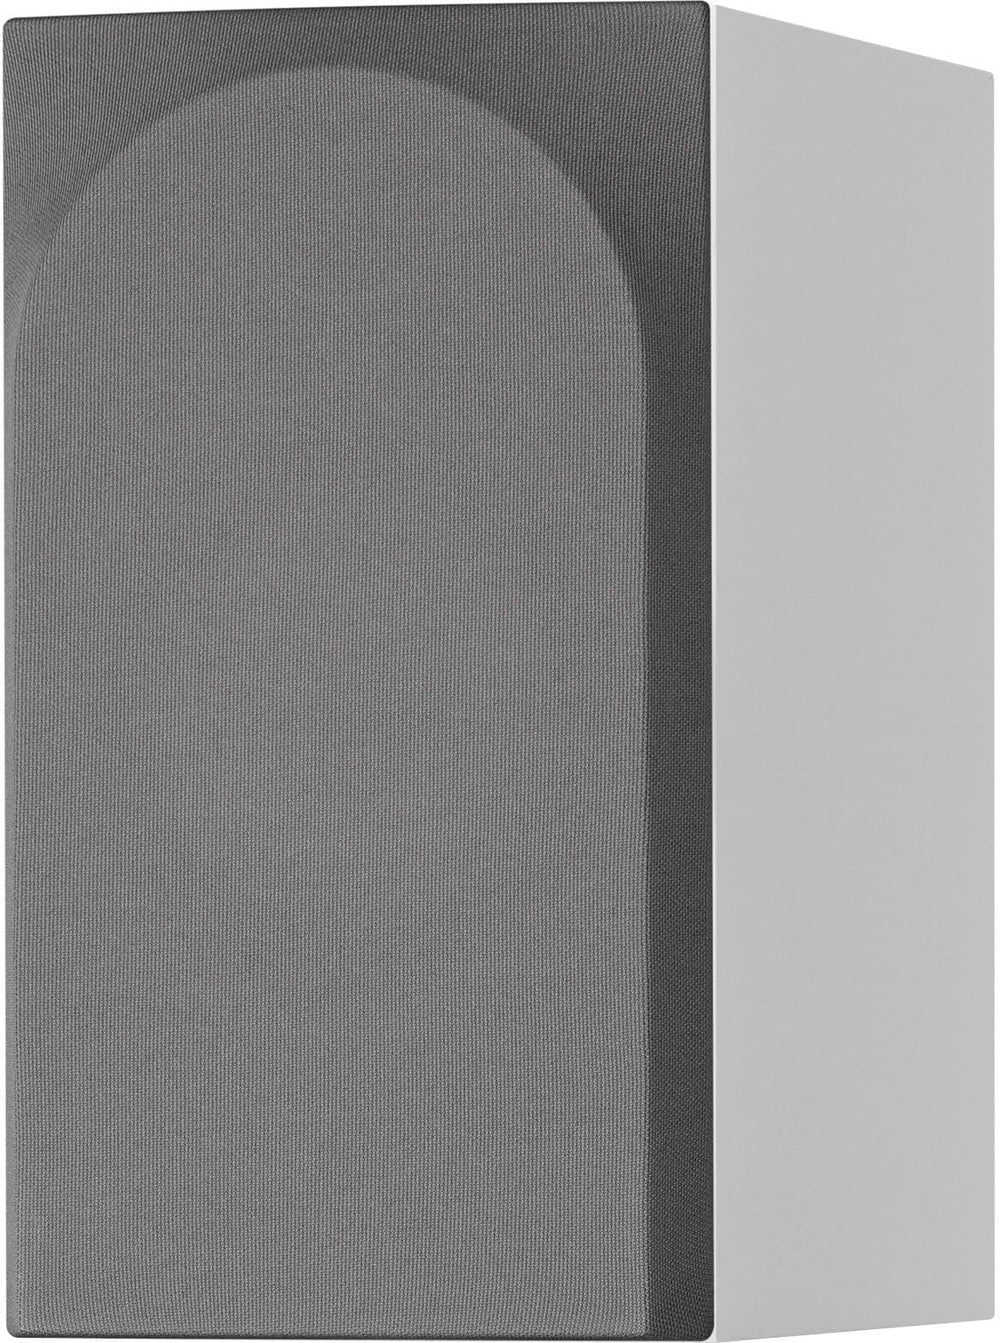 Bowers & Wilkins - 700 Series 3 Bookshelf Speaker w/6.5" midbass (pair) - White_1